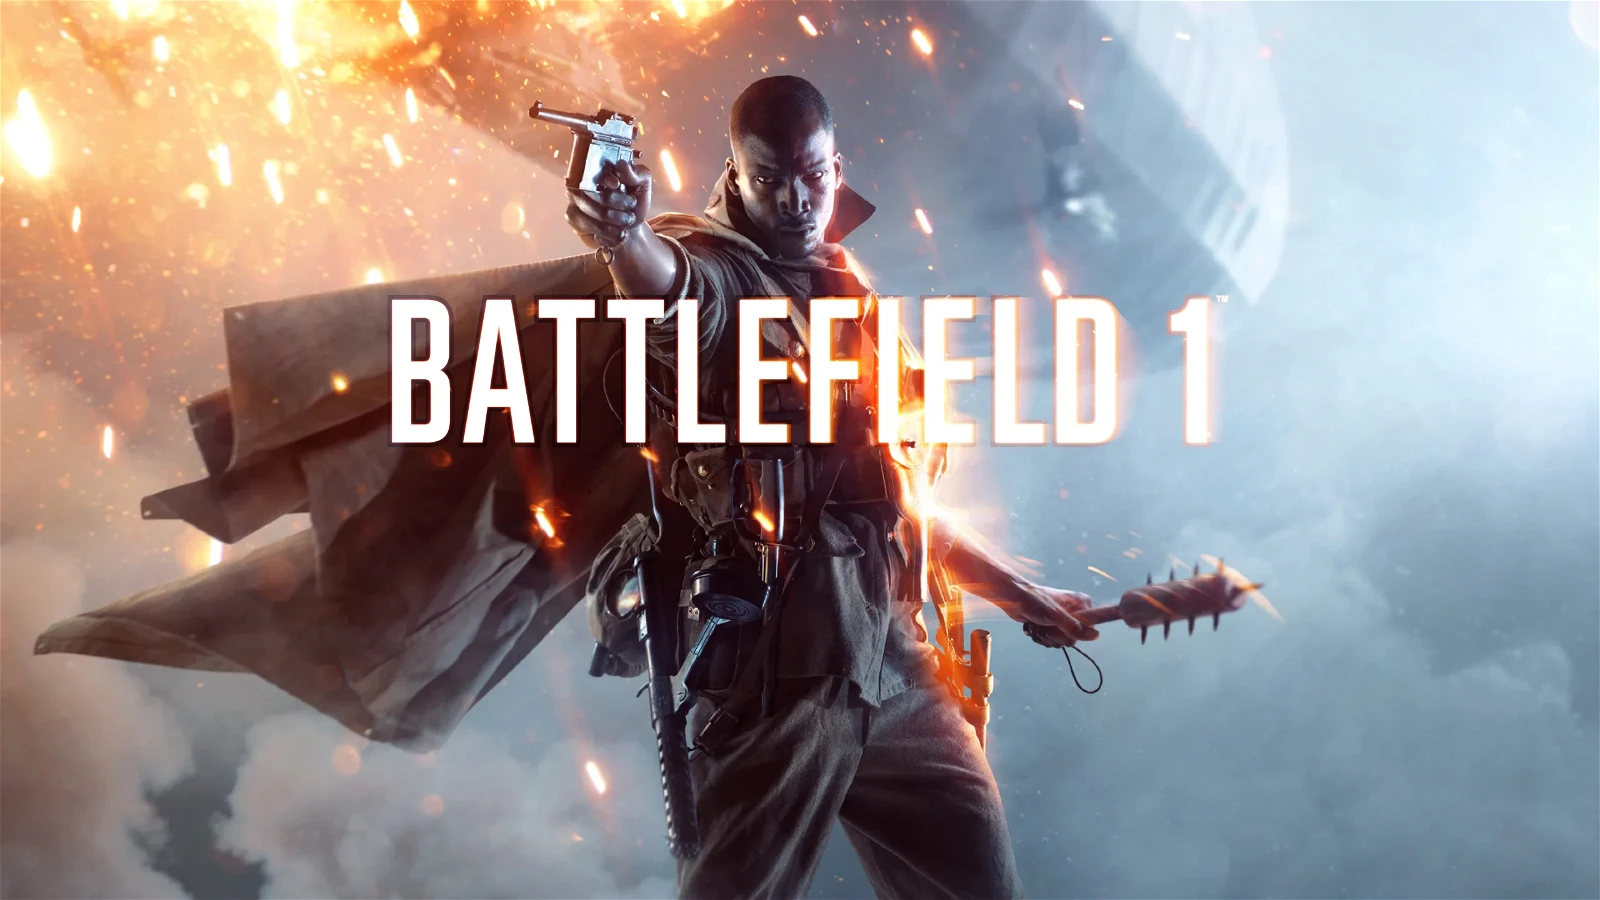 Battlefield 1 was released in 2016